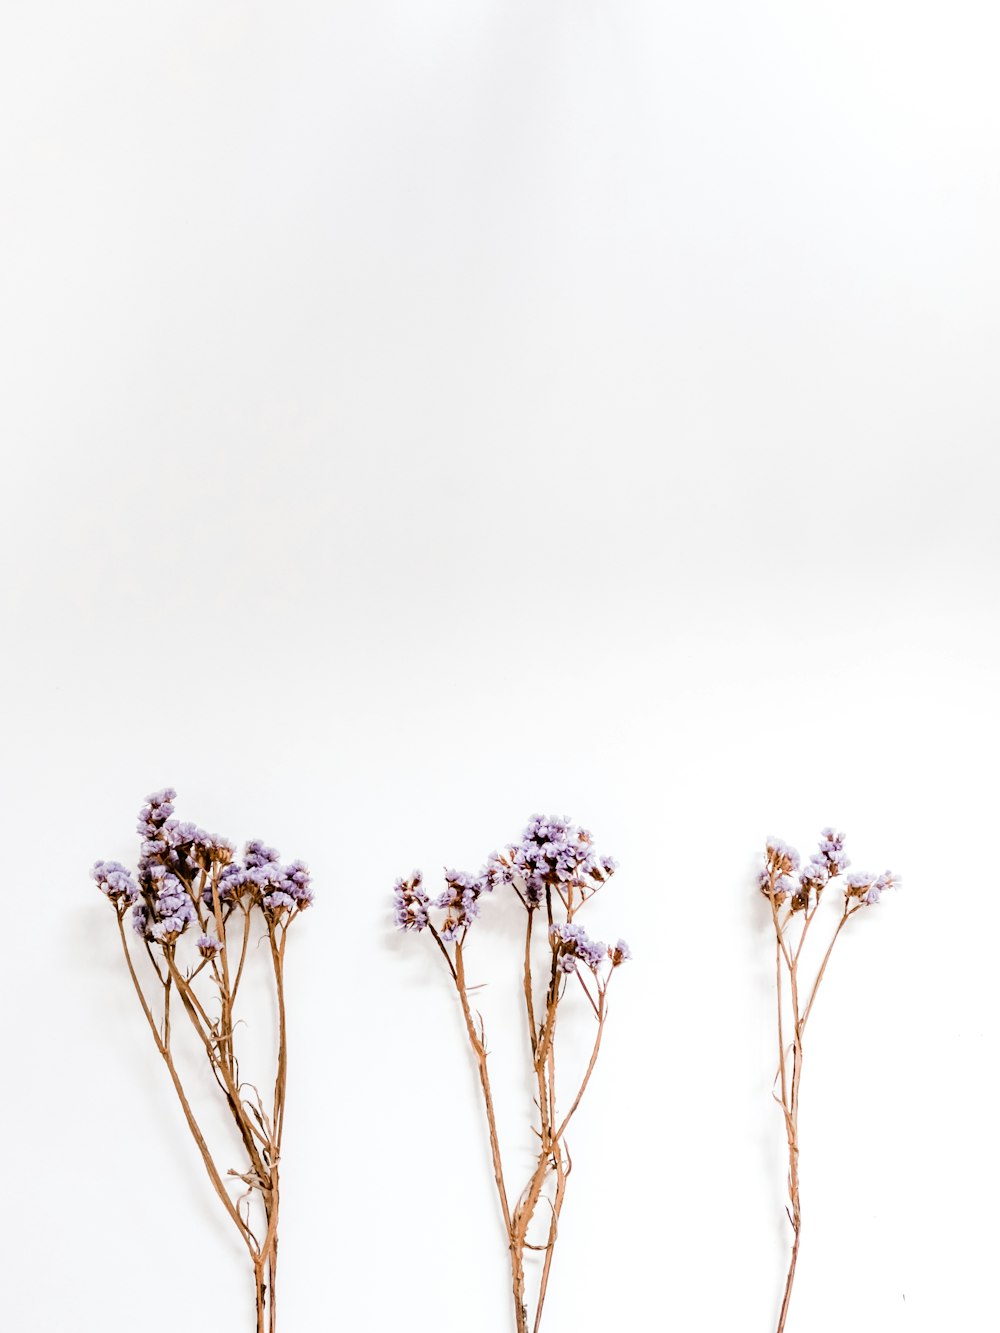 白い表面に紫色の花びらが3つ咲く